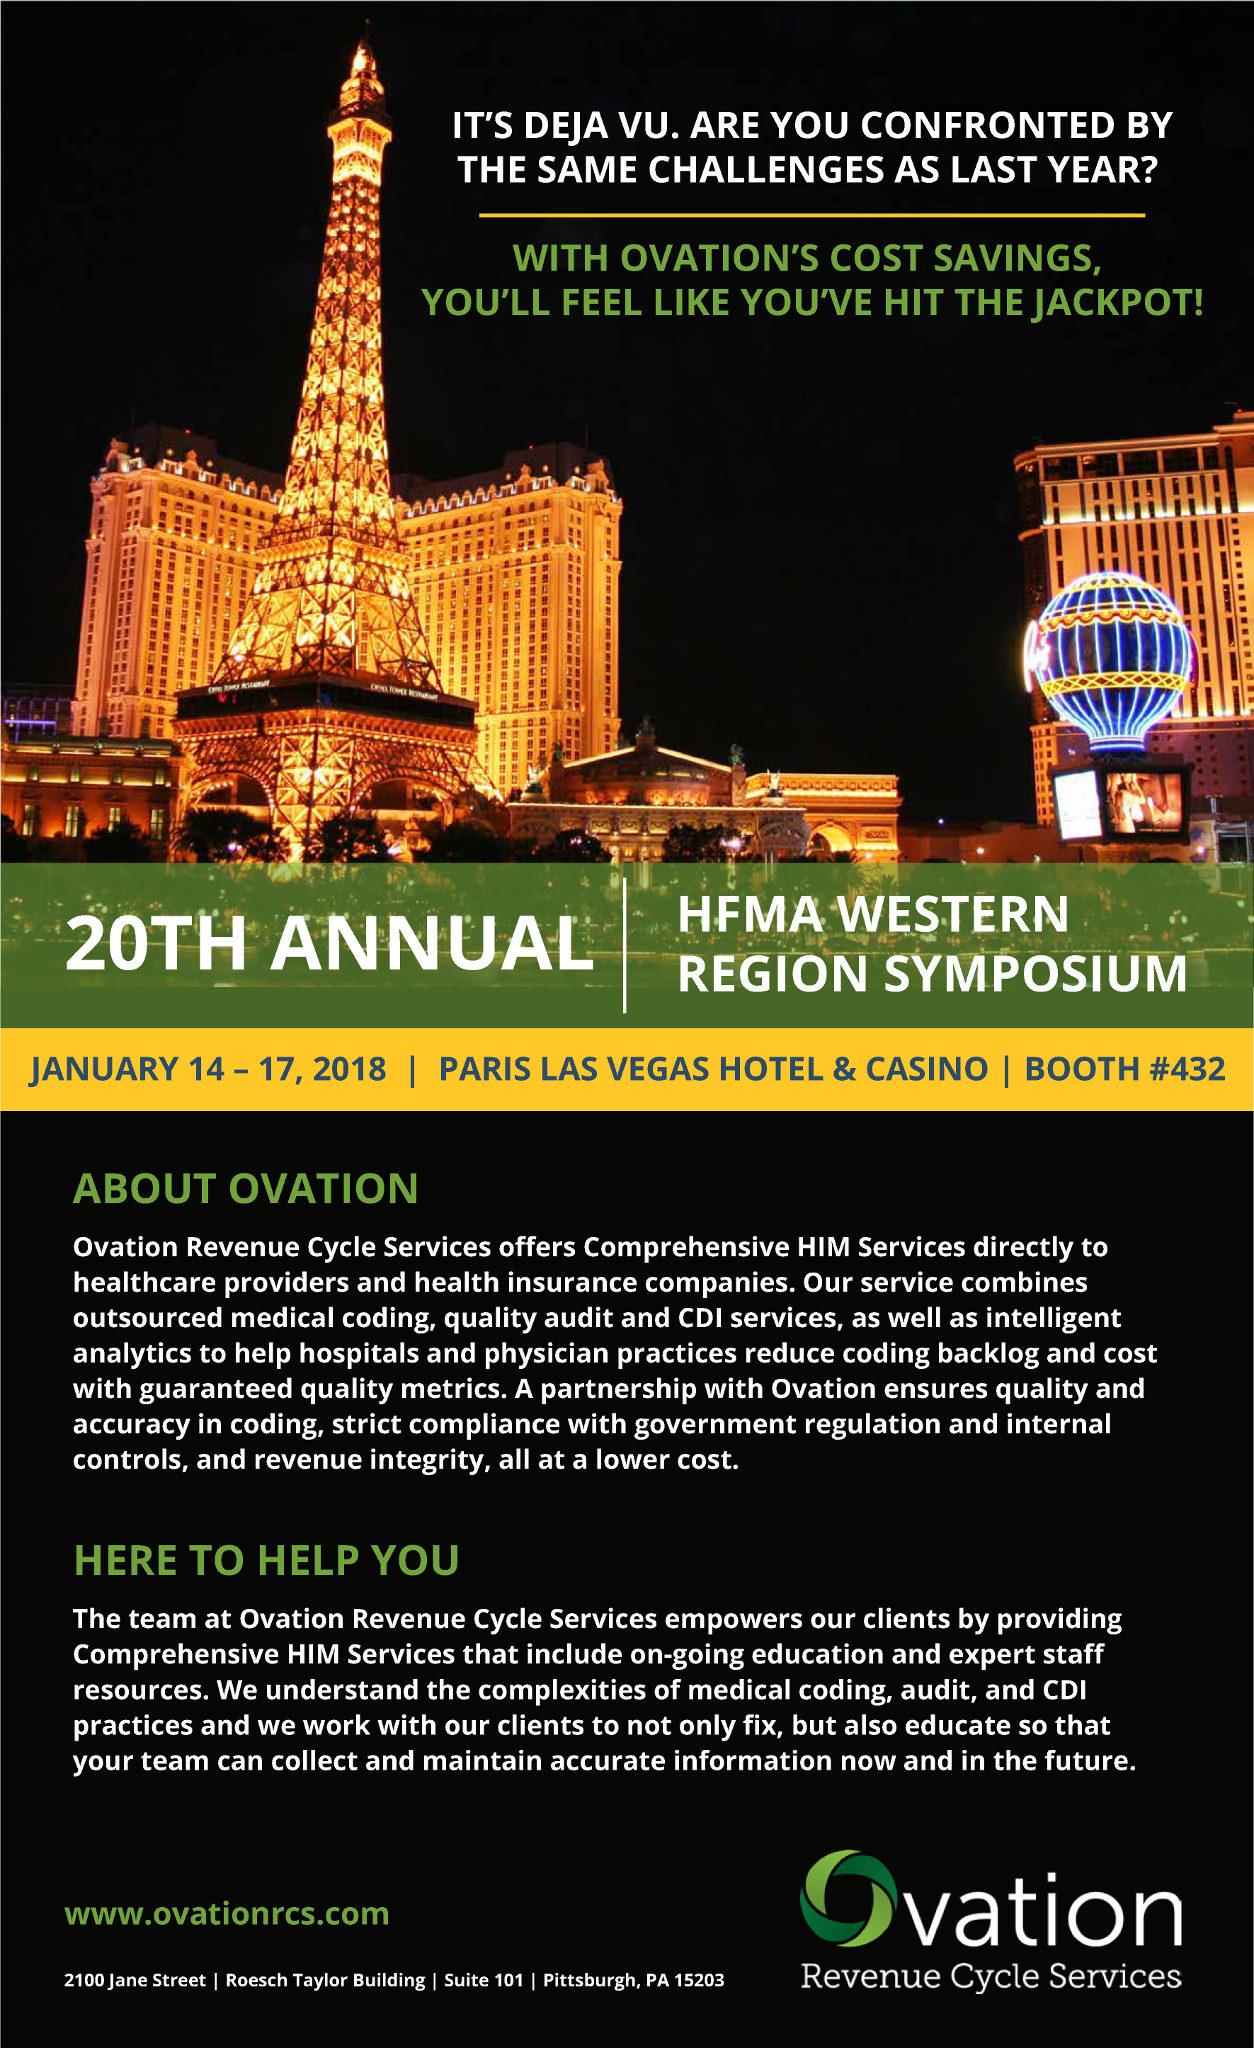 HFMA-Western-Symposium-2018-Artwork-Constant-Contact